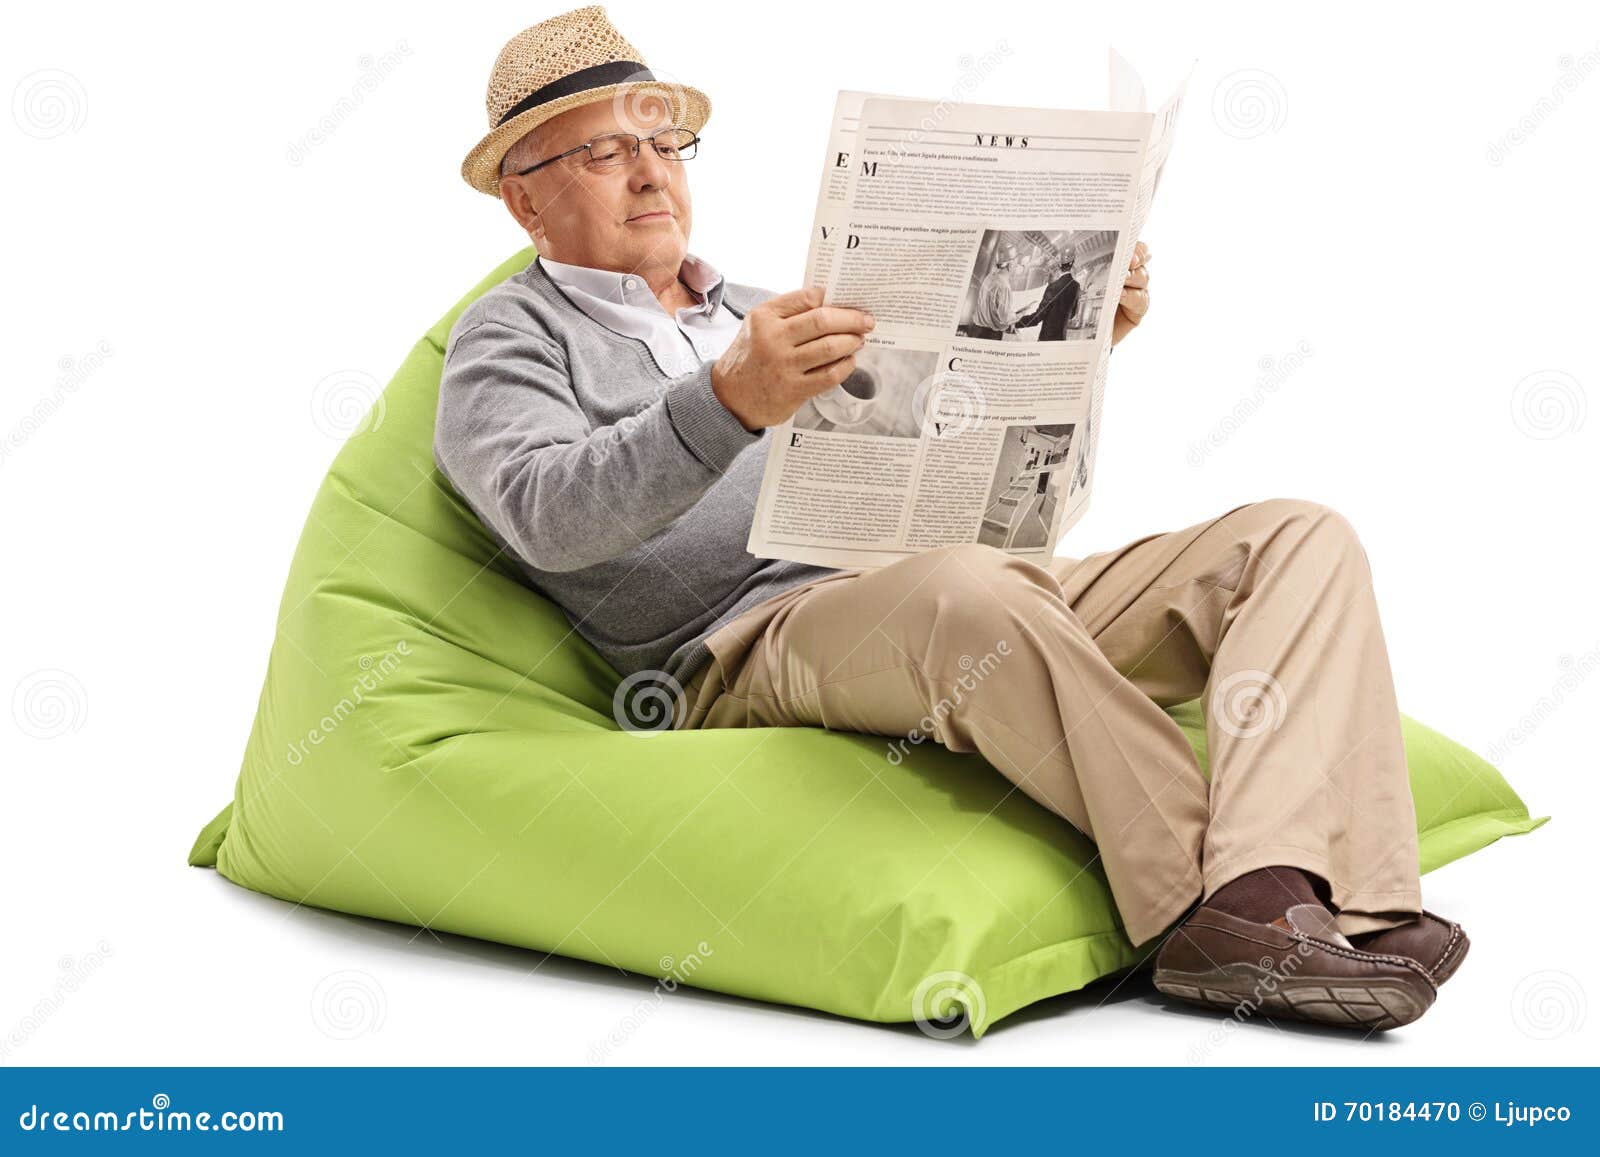 Читать газету толстушку. Человек в кресле с газетой. Человек с газетой сидит в кресле. Дедушка в кресле. Мужчина в кресле с газетой.